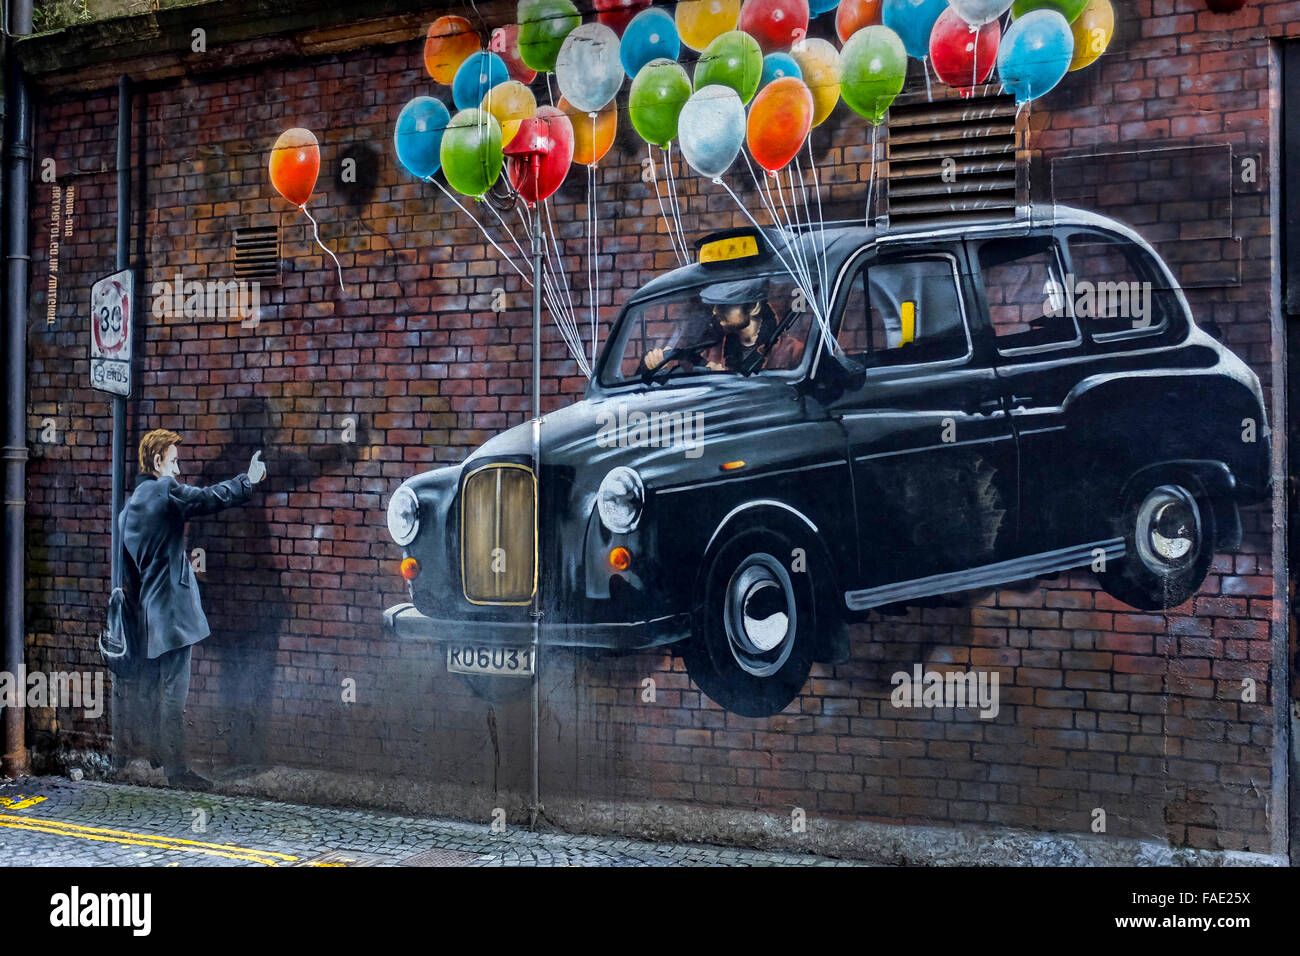 Städtischen Wandkunst, die Darstellung eines Mannes Beflaggung hinunter ein Taxi, Glasgow, Schottland, UK Stockfoto